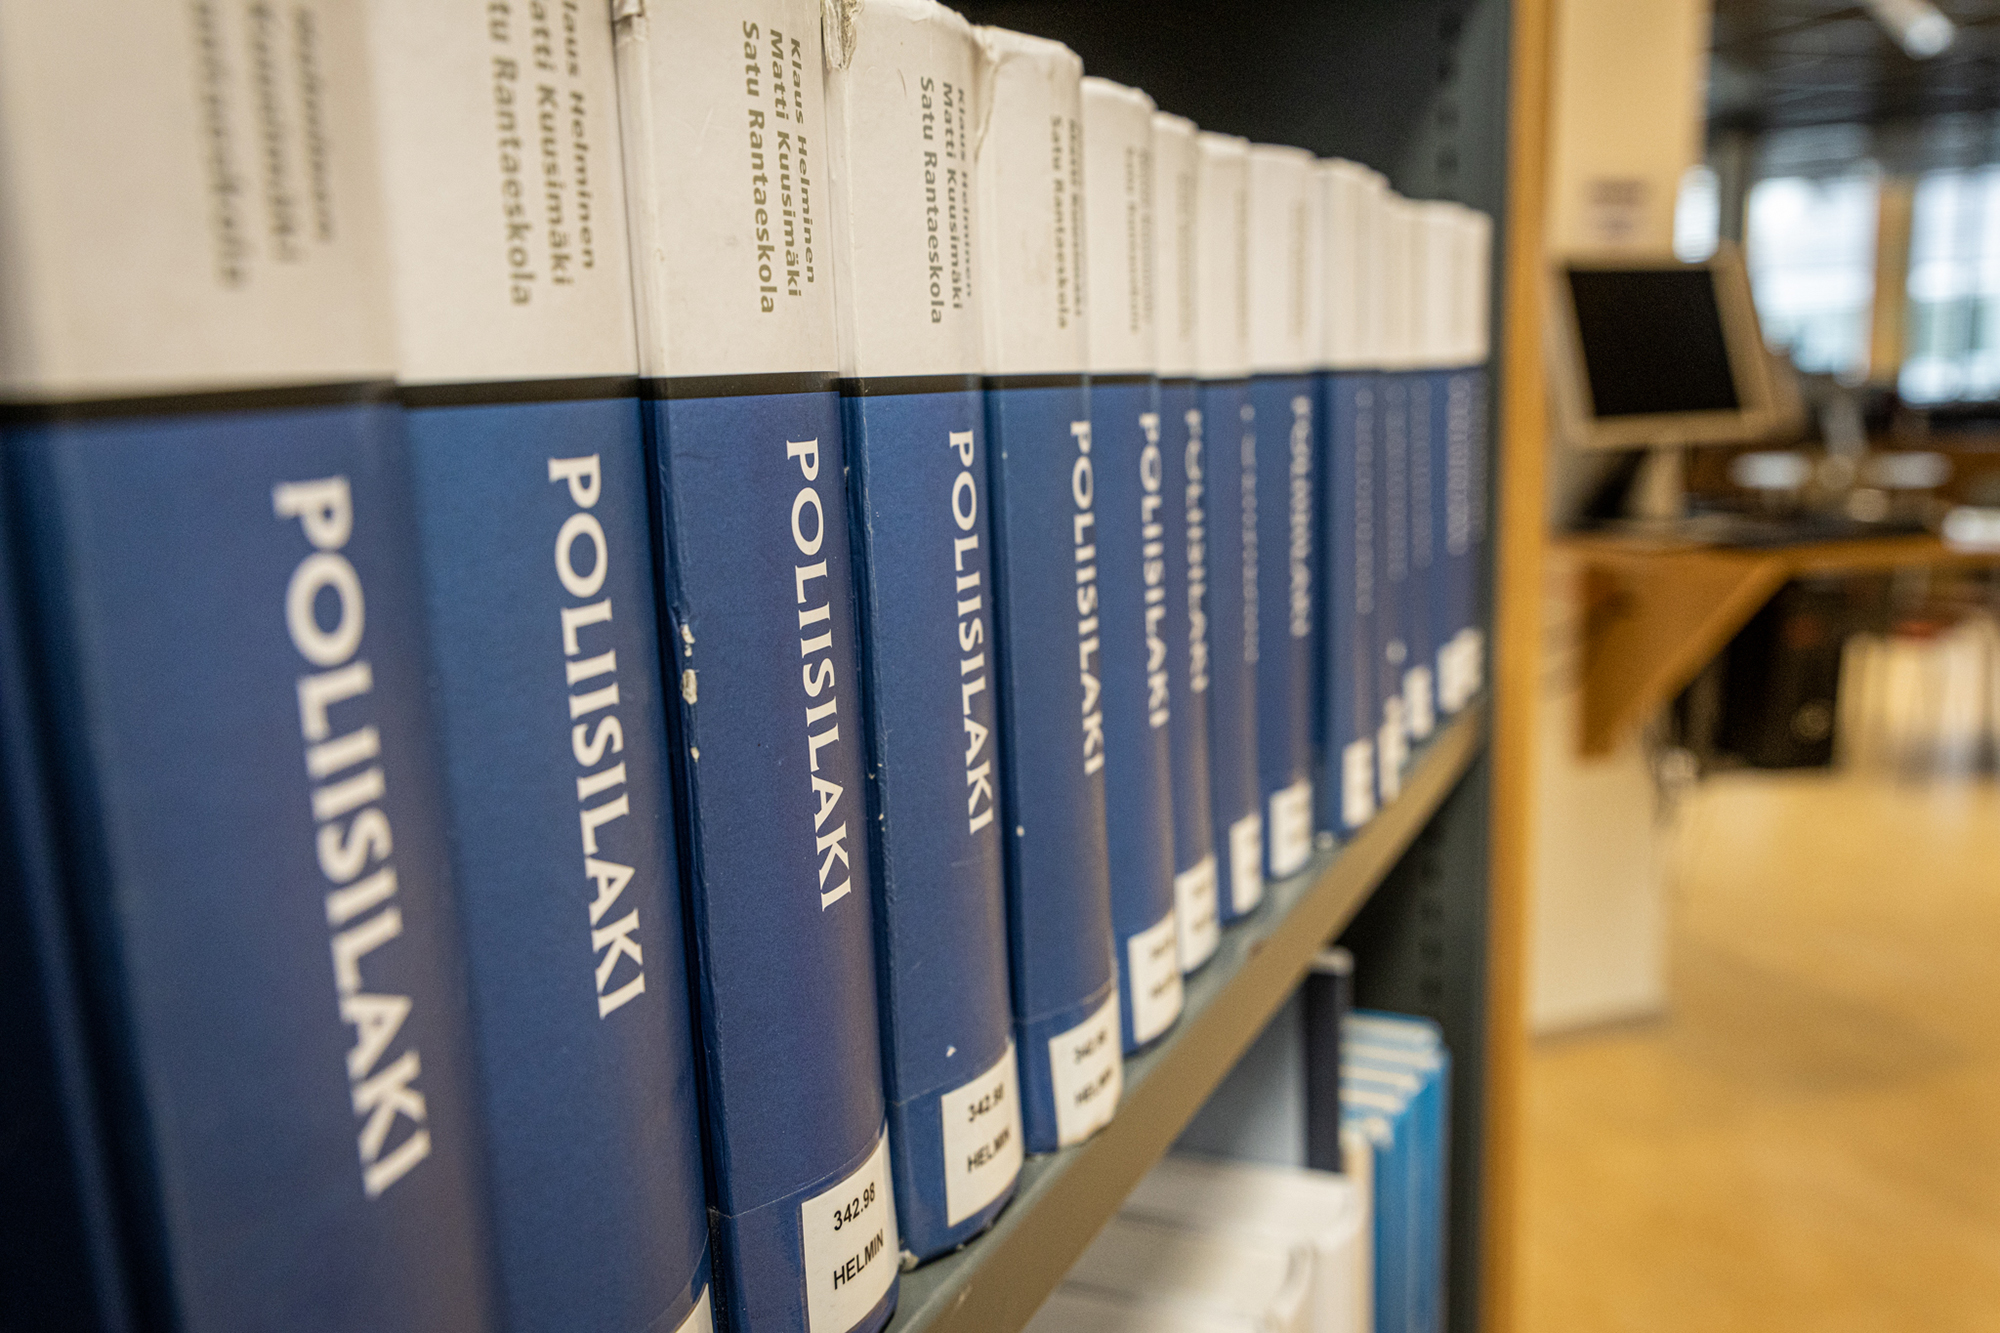 Exemplar av boken Poliisilaki på en bibliotekshylla.